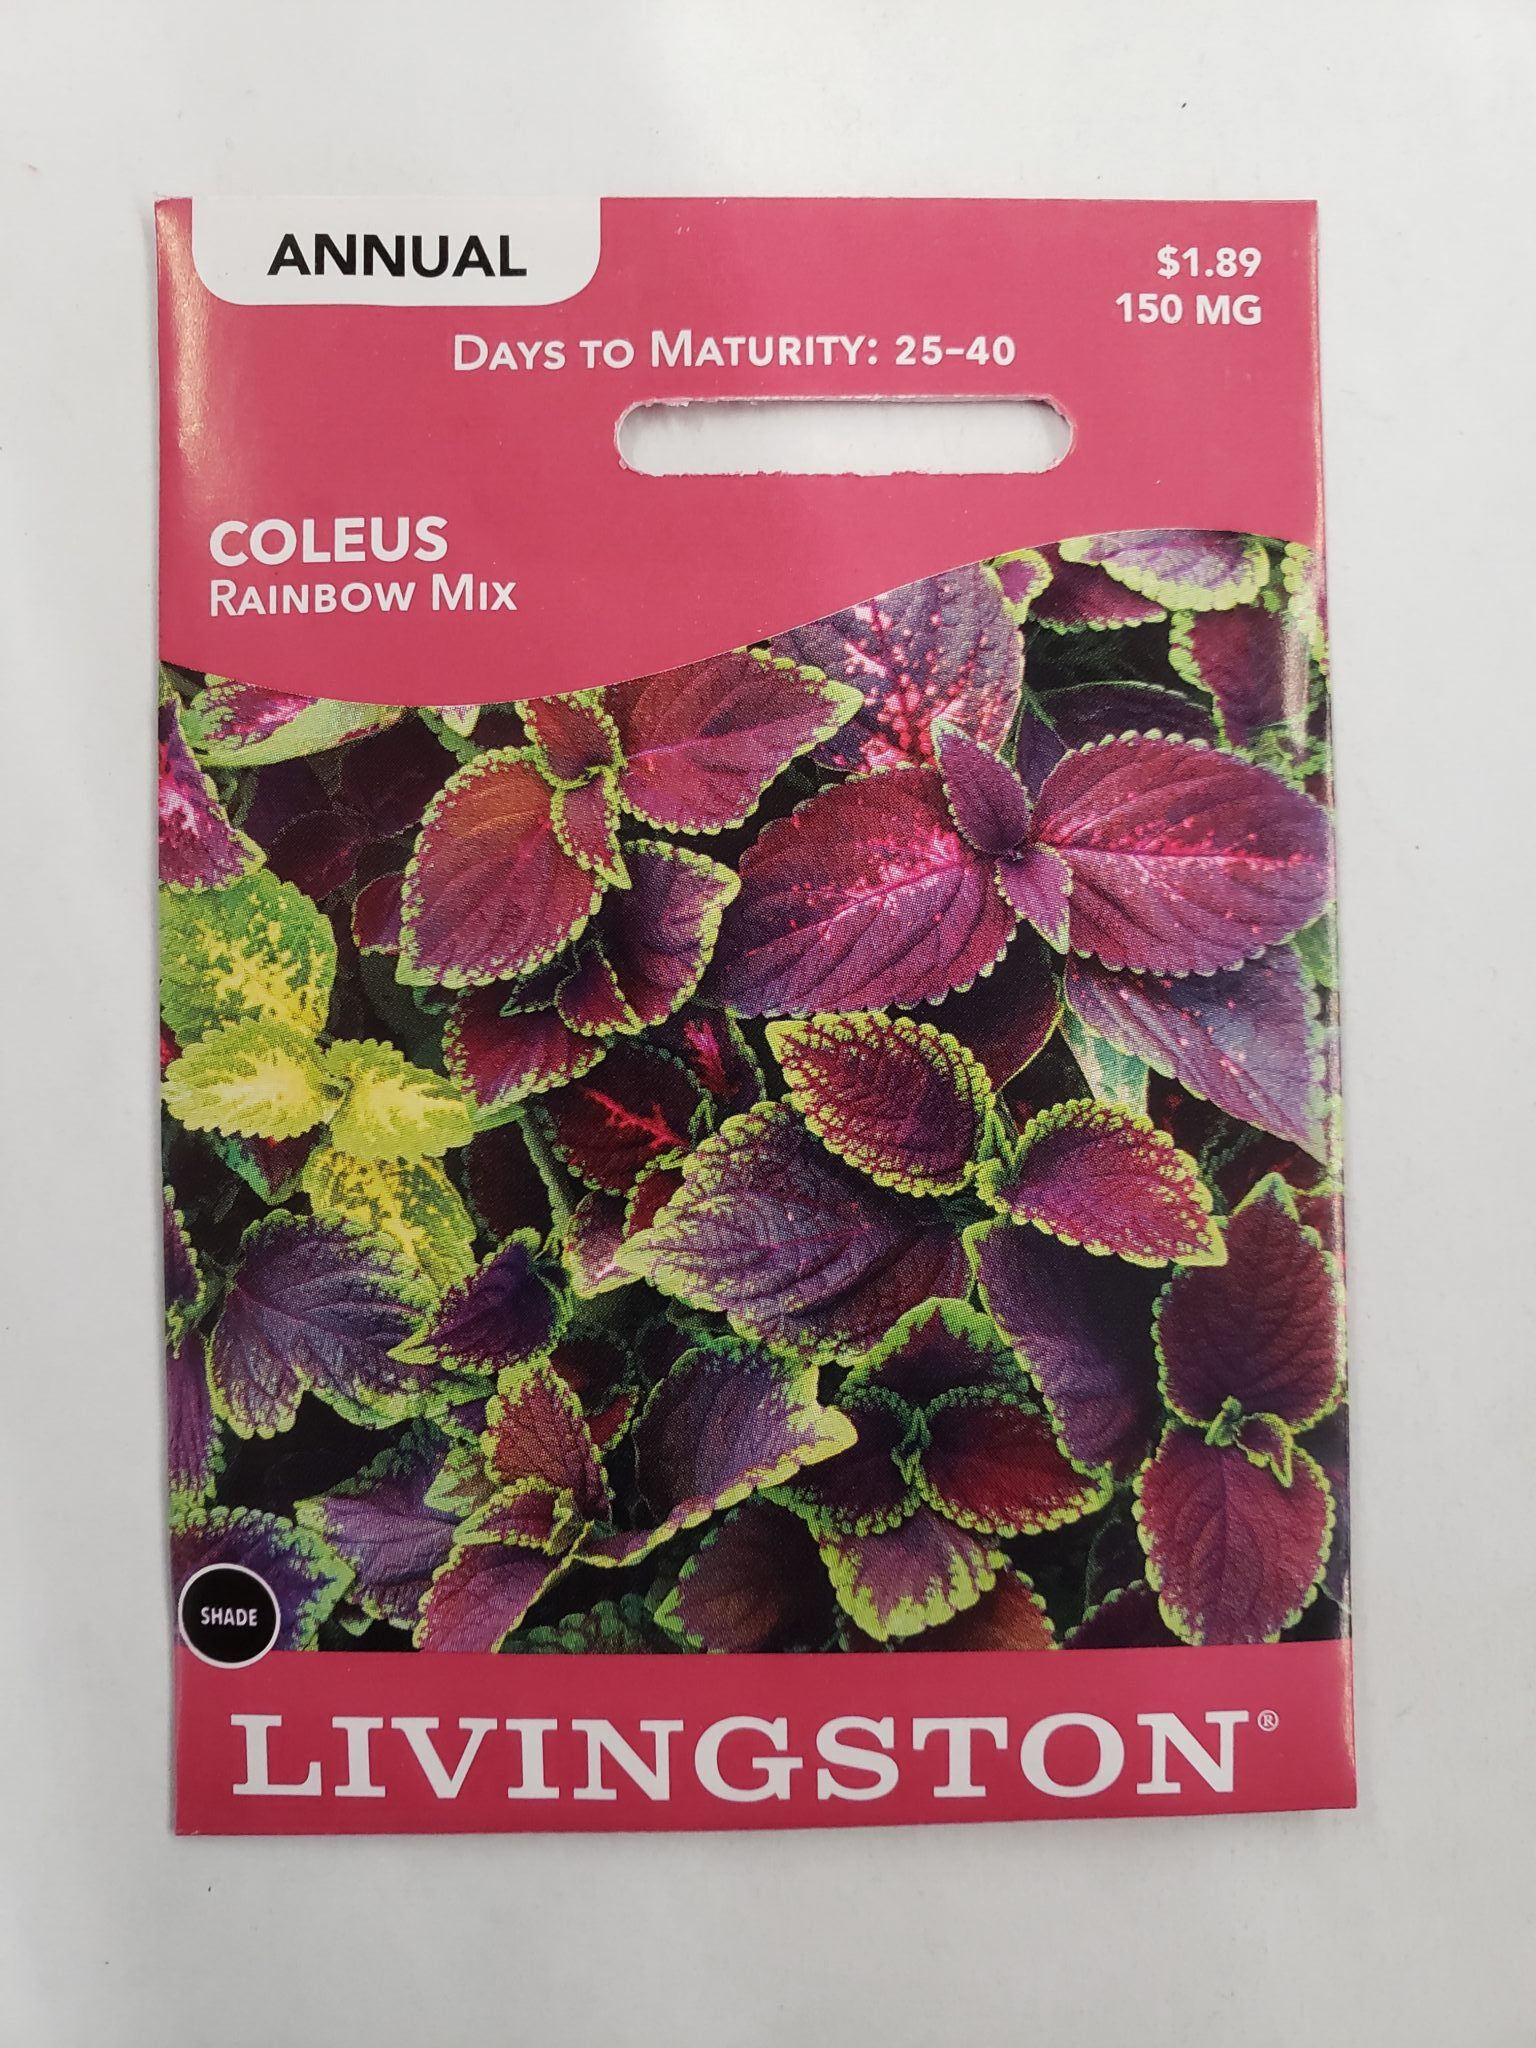 Livingston Seed Y1100 Rainbow Mix Coleus Seed, Summer Bloom, Kelly Green/Lemon Yellow/Royal Burgundy Bloom, 150 mg Pack